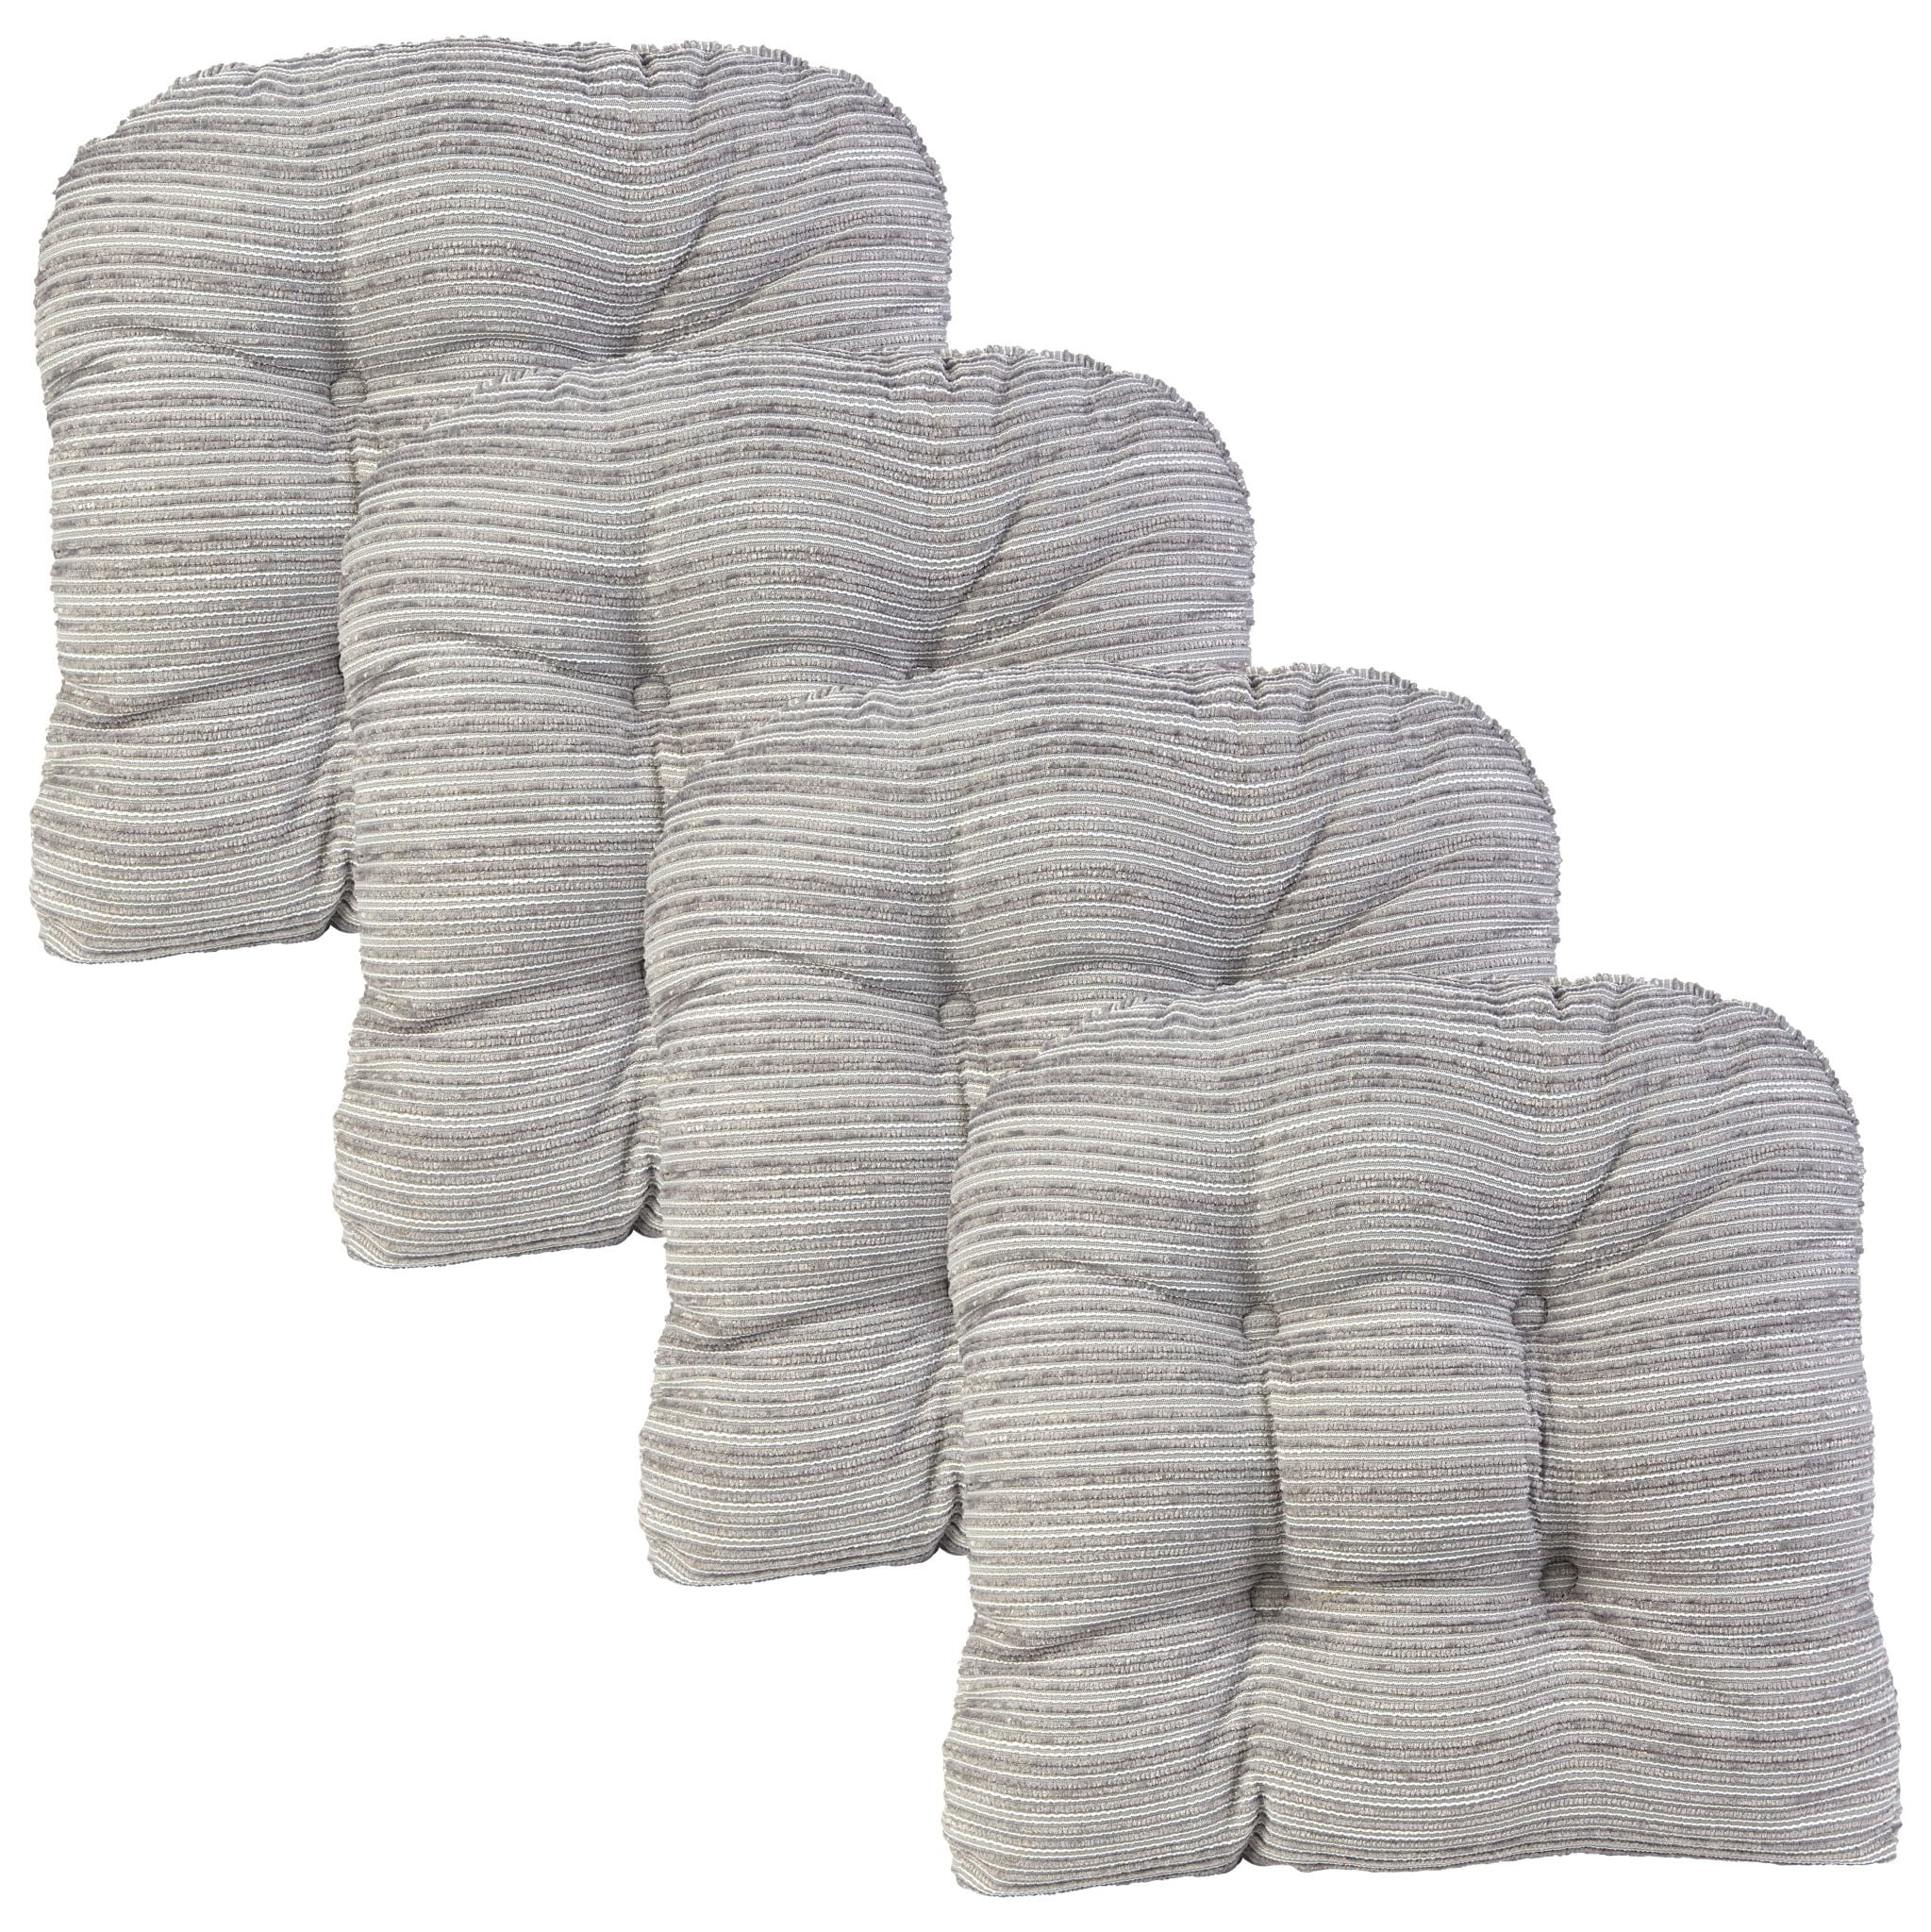 Klear Vu Memory Foam Chair Cushions, Non-Slip Grip Dot, 15 x 15 x 3 Inches, Gray Set of 4